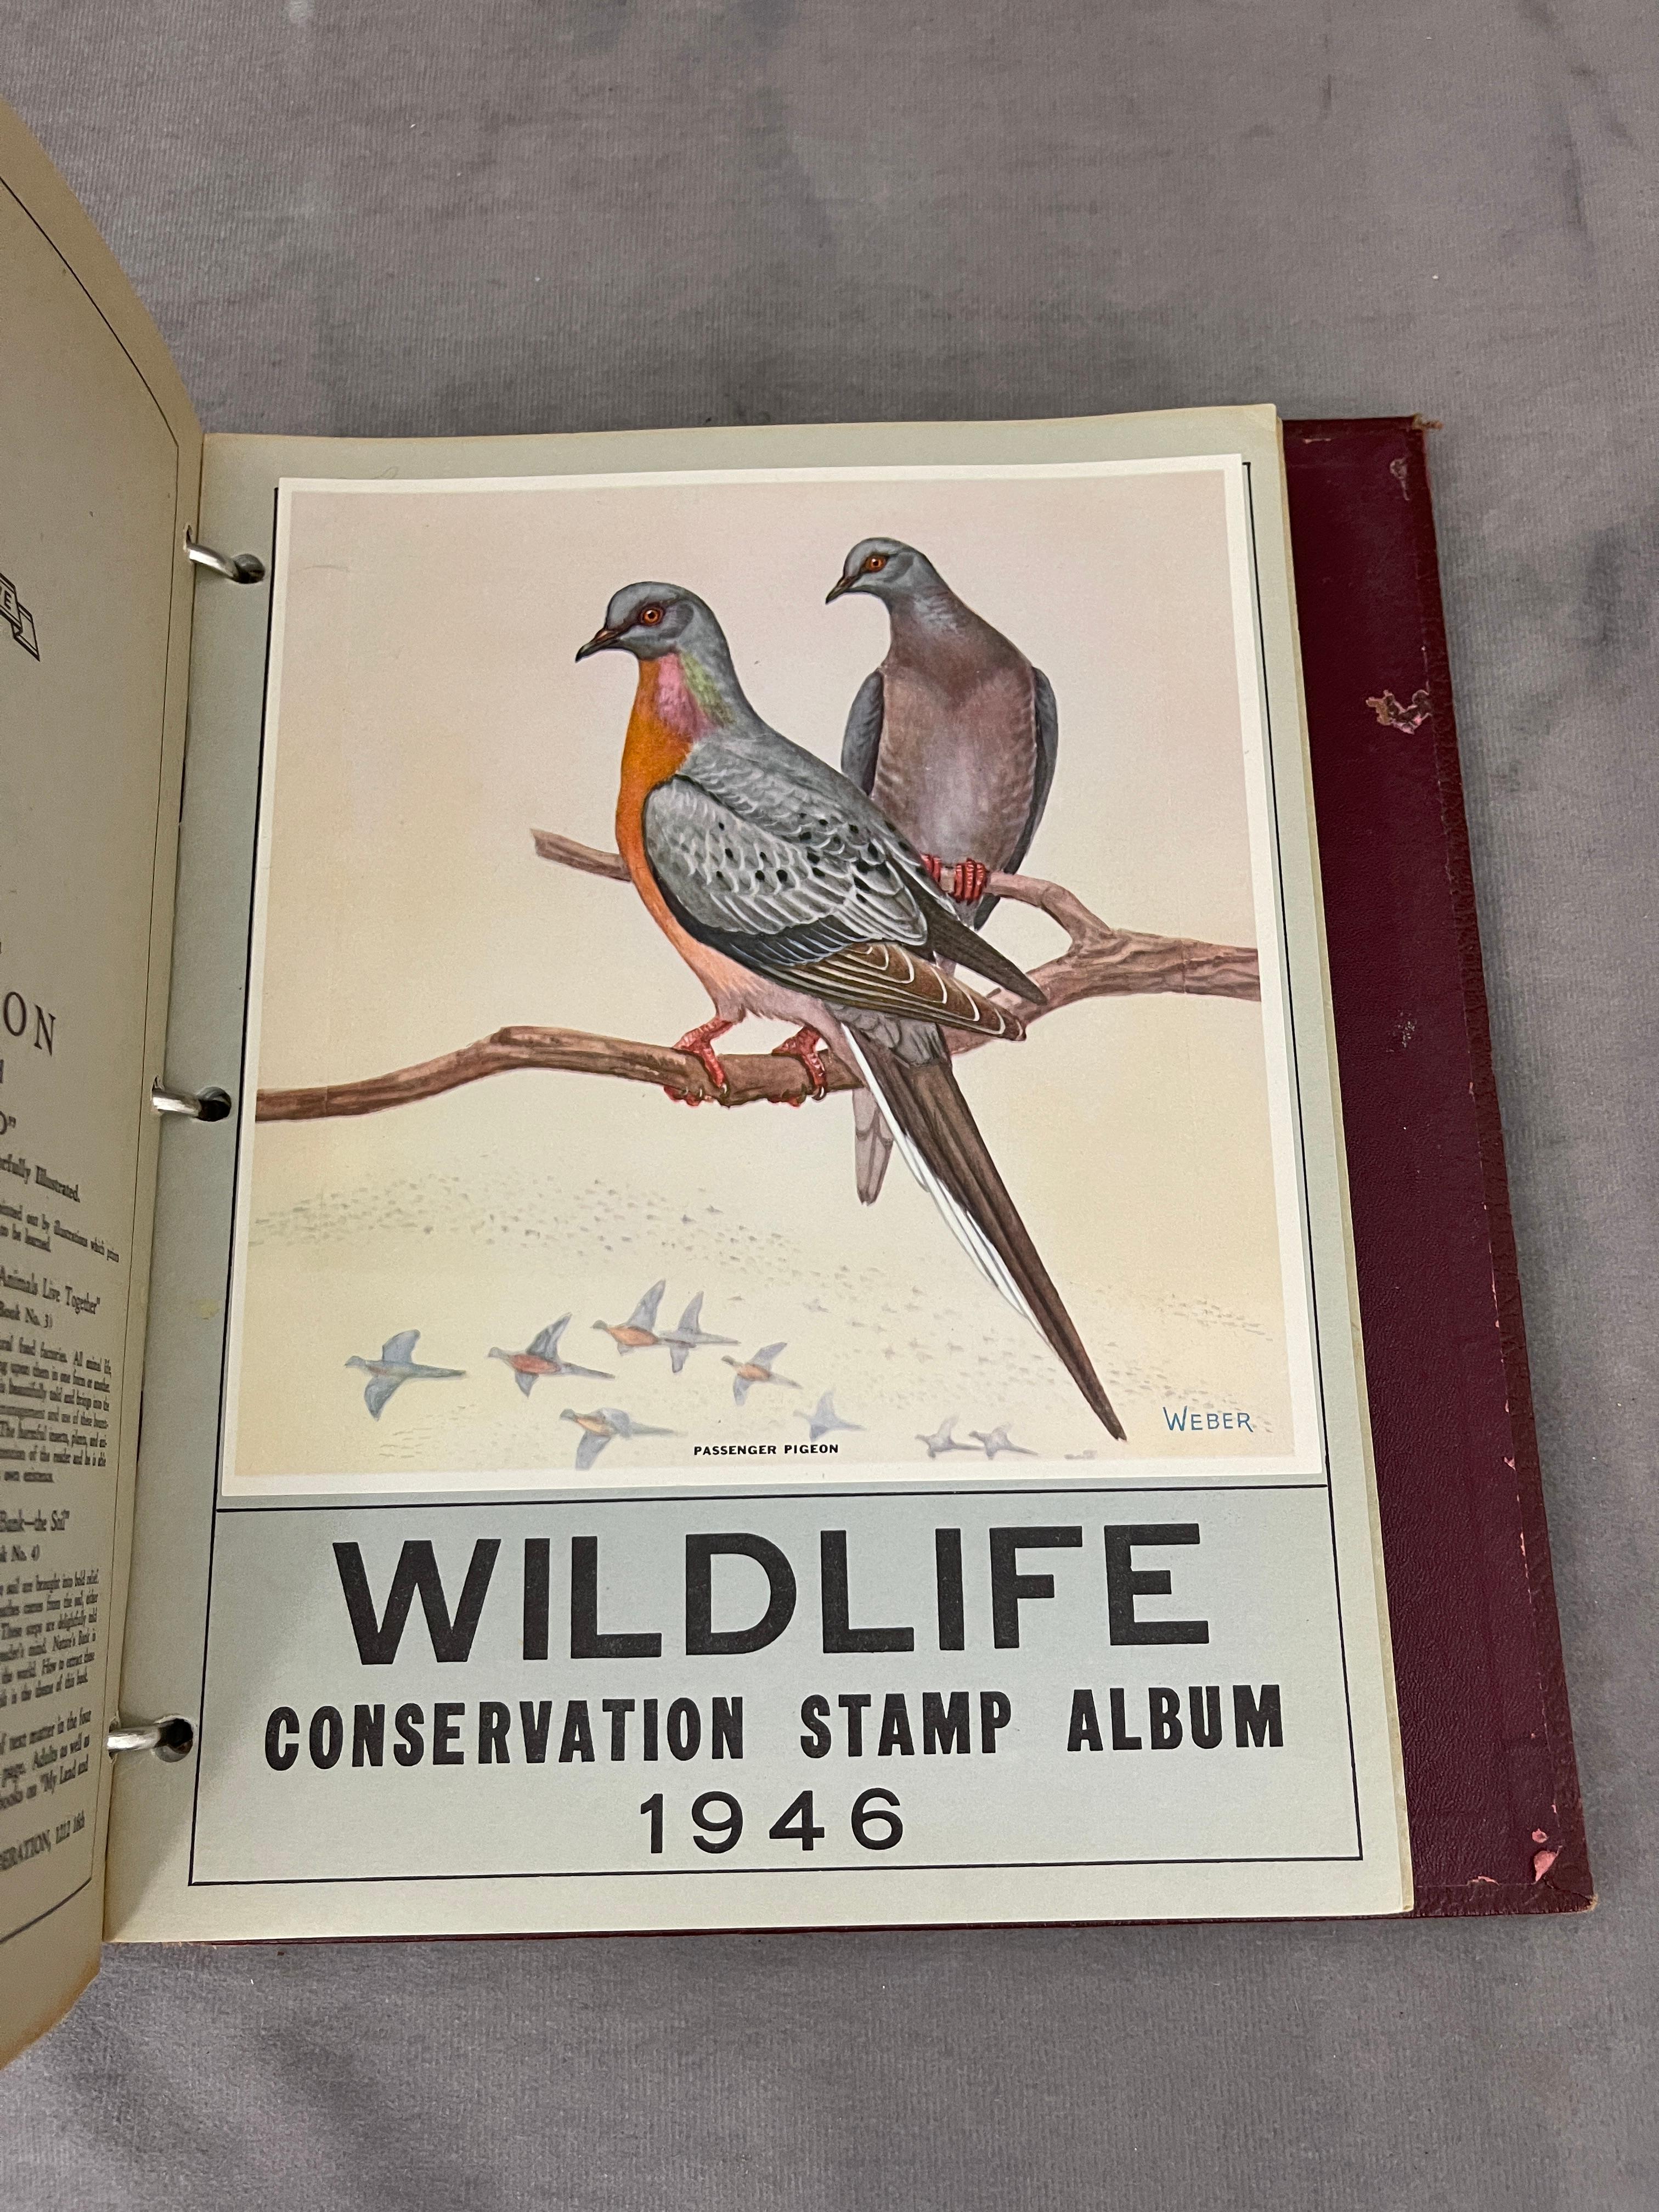 National Wildlife Federation Wildlide Stamp Album